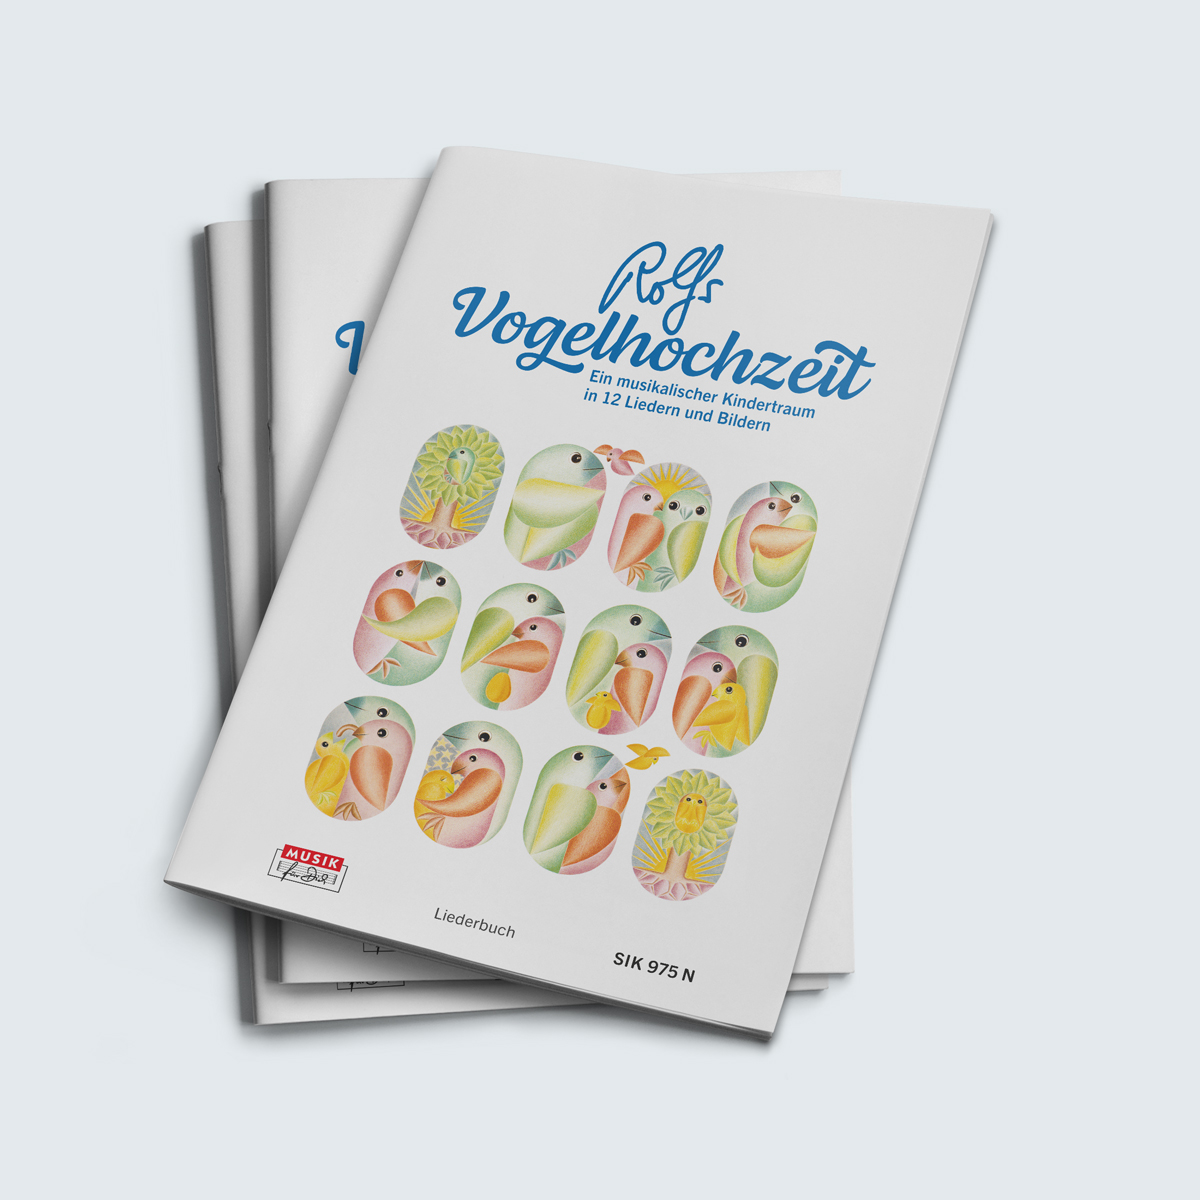 Rolfs Vogelhochzeit Cover